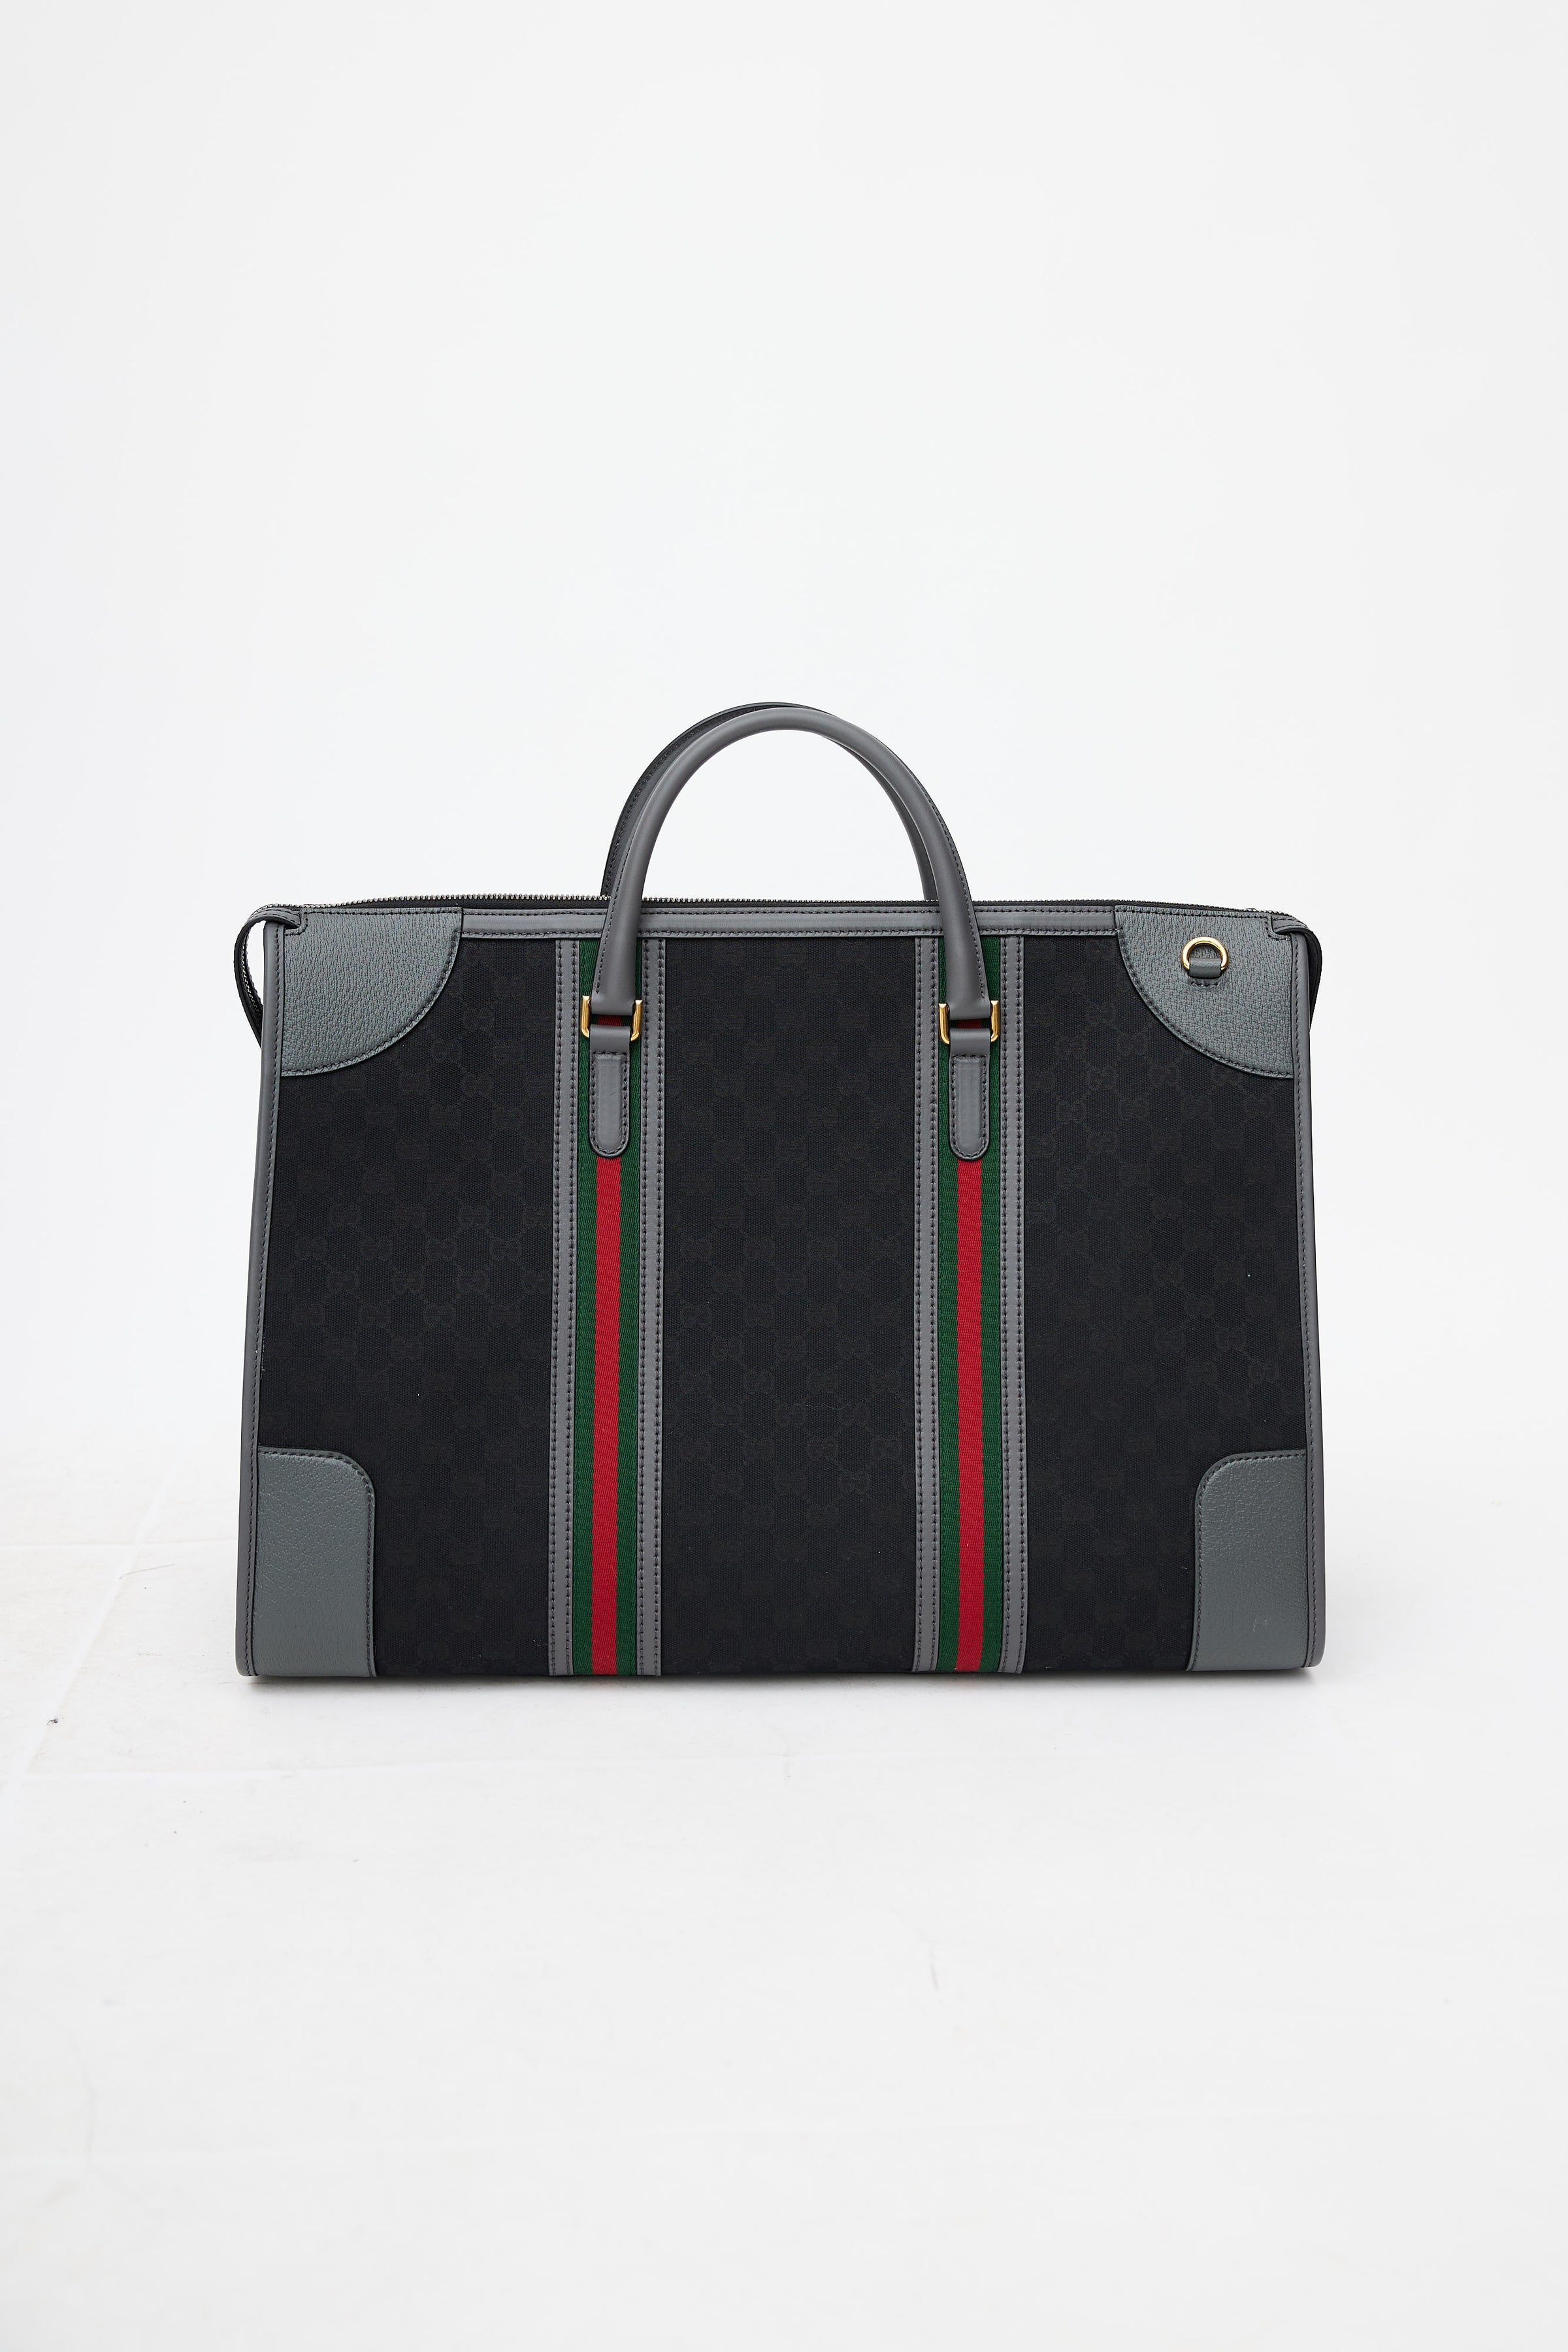 Grey Ophidia Web-stripe GG Supreme canvas tote bag, Gucci